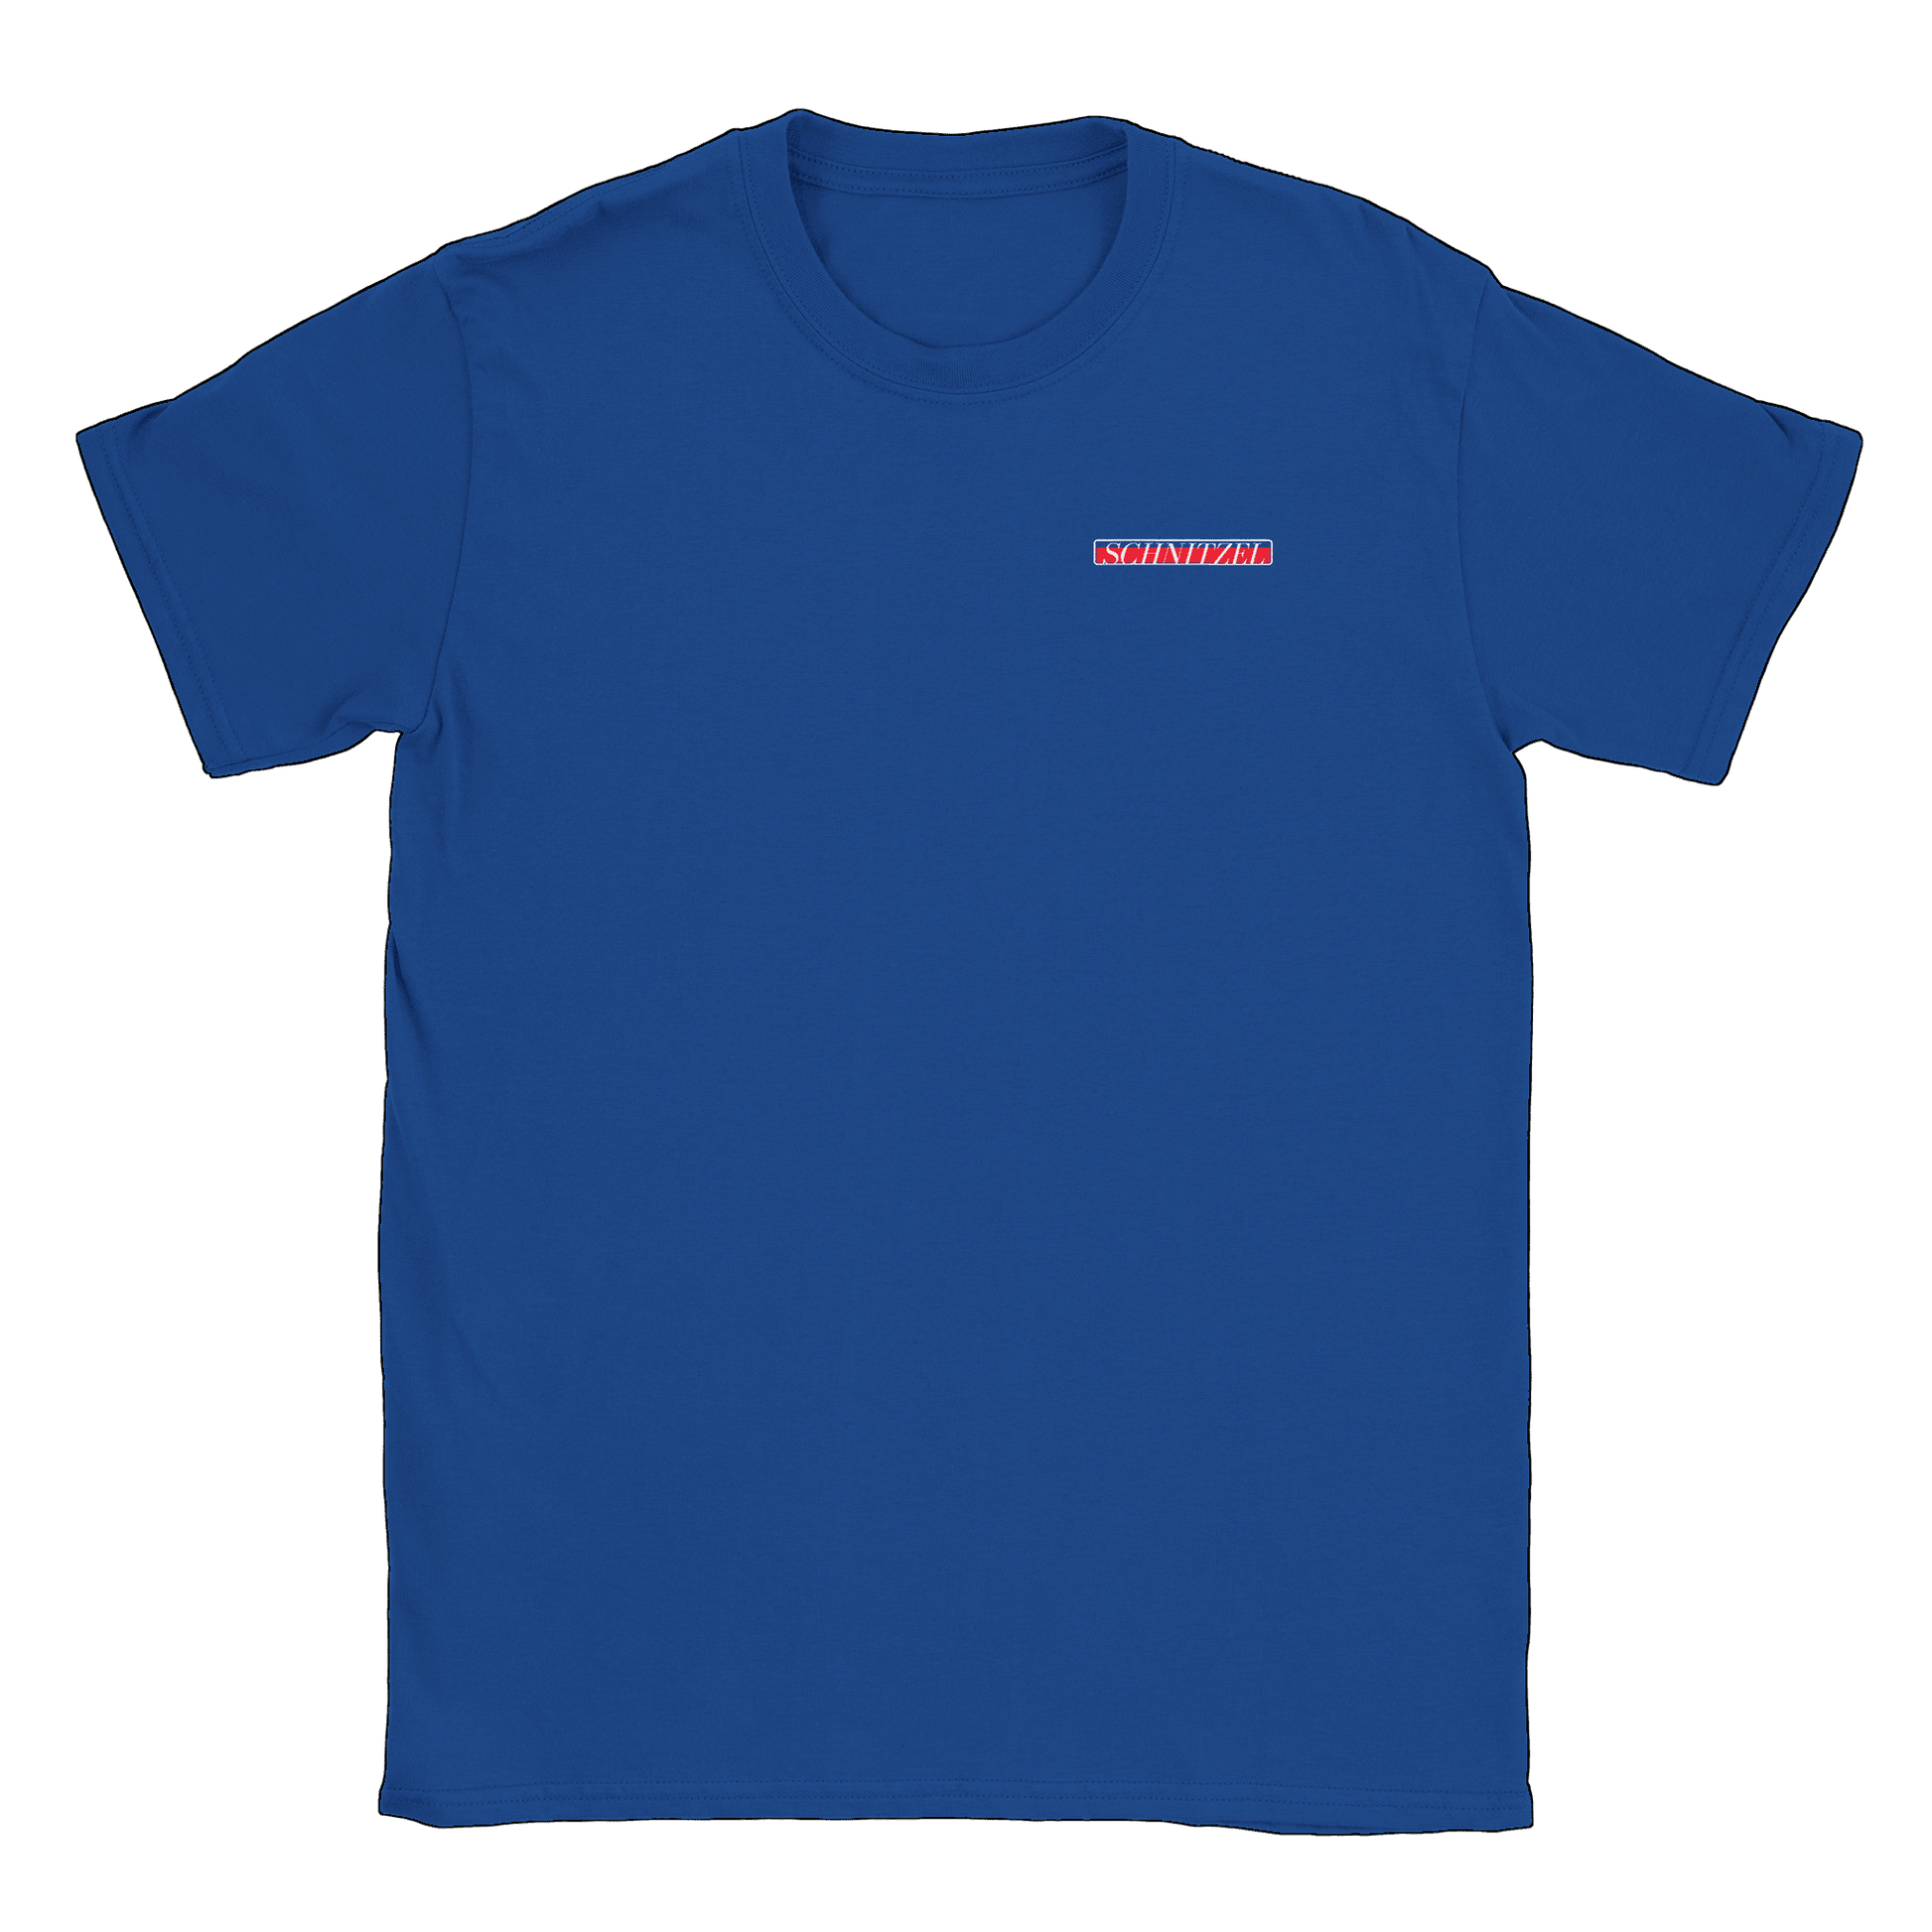 Schnitzel - T-shirt Royal